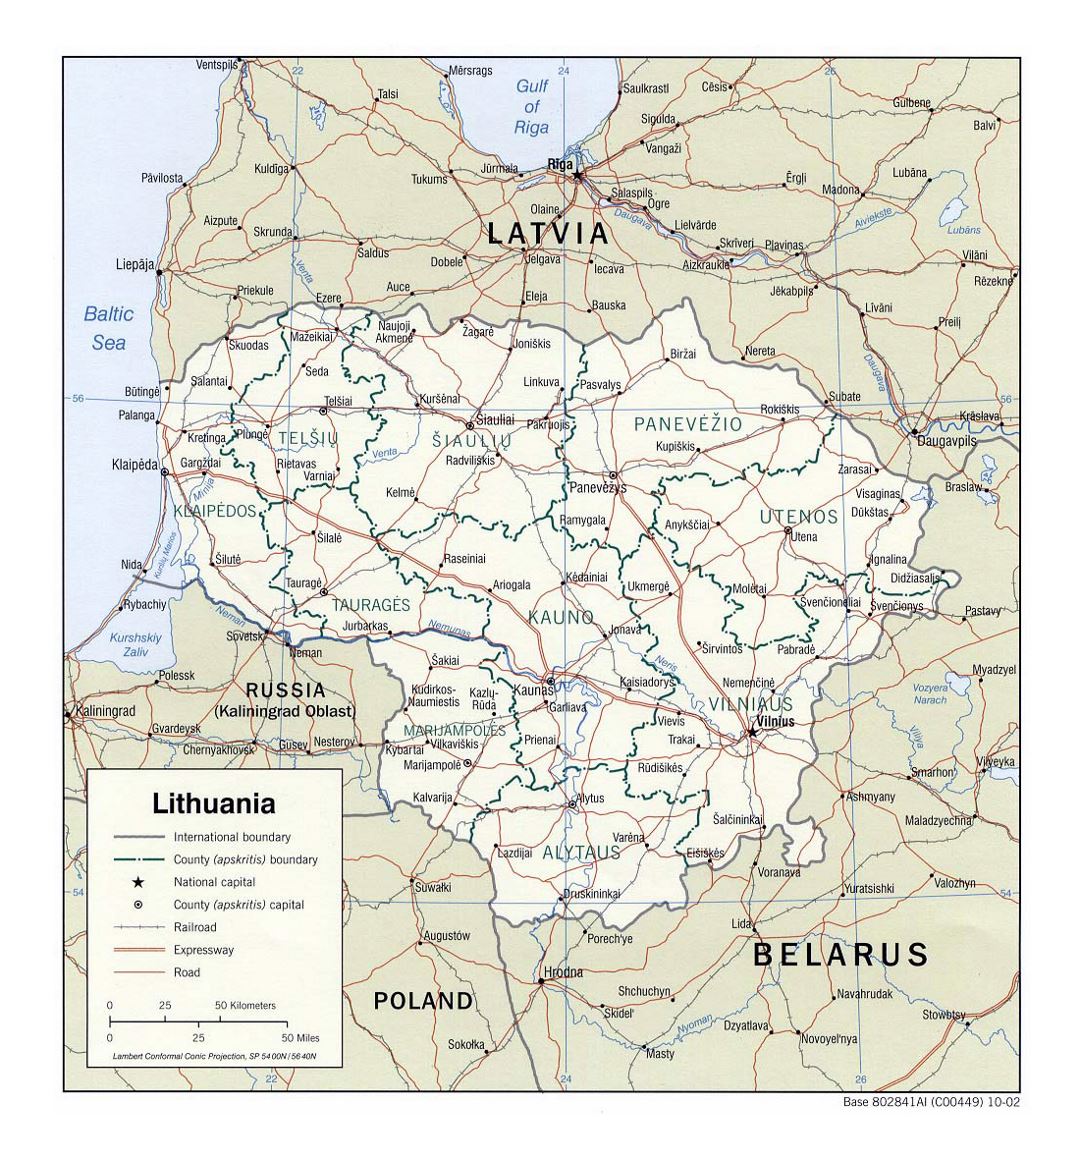 Detallado mapa político y administrativo de Lituania con carreteras, ferrocarriles y principales ciudades - 2002